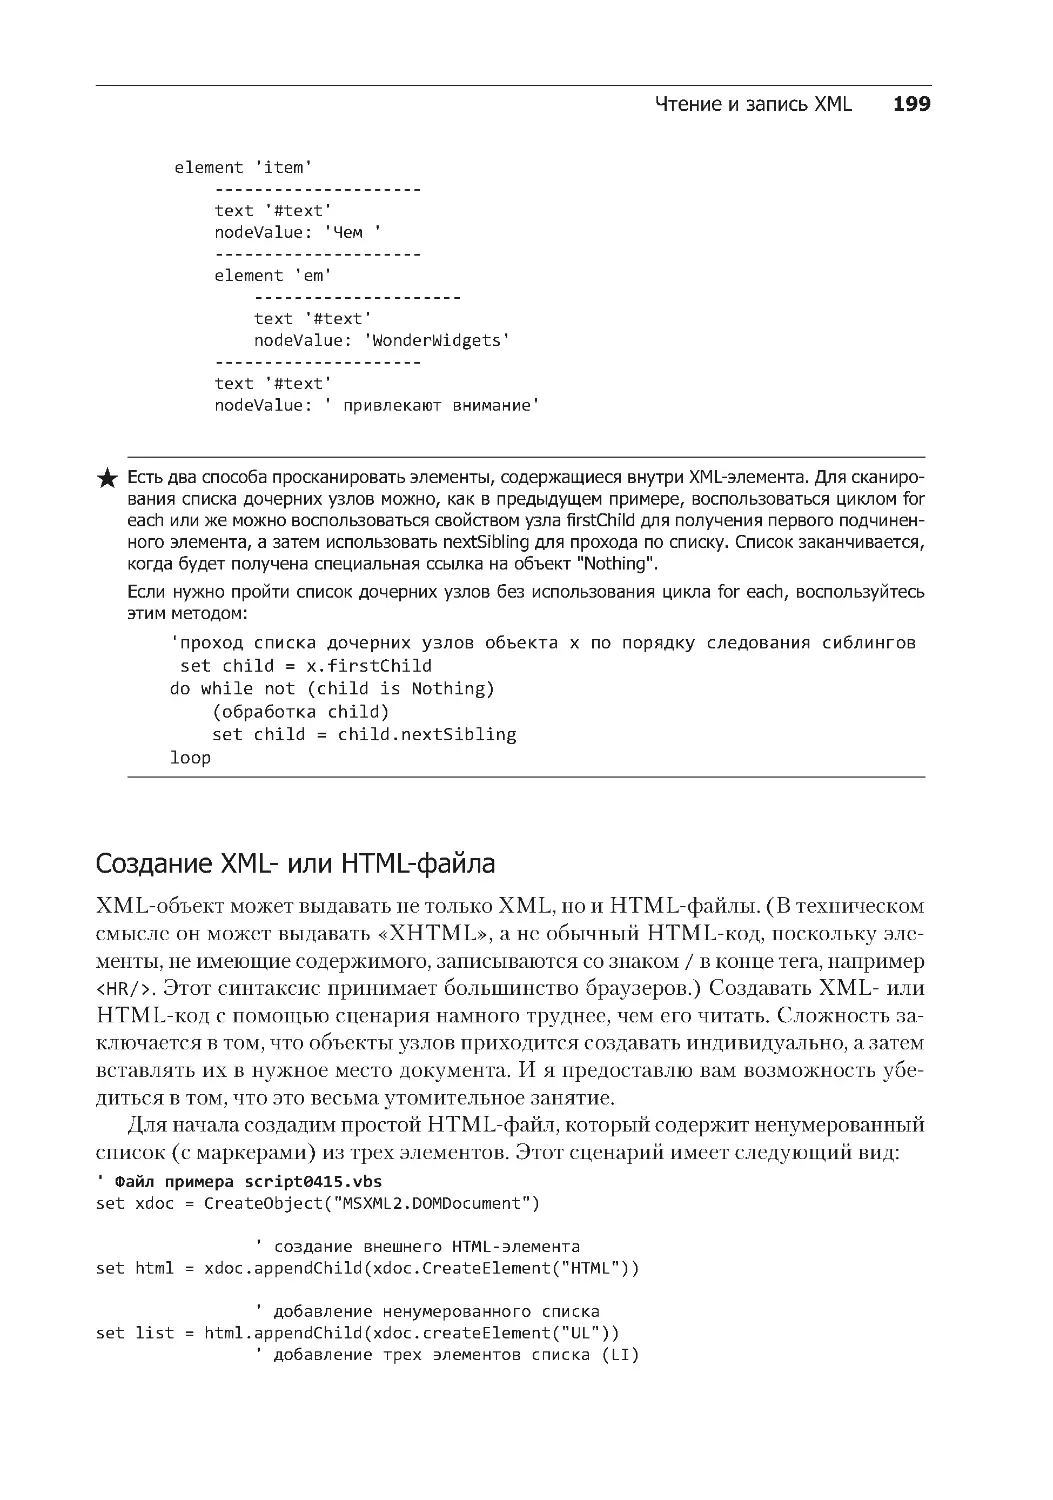 Создание XML- или HTML-файла